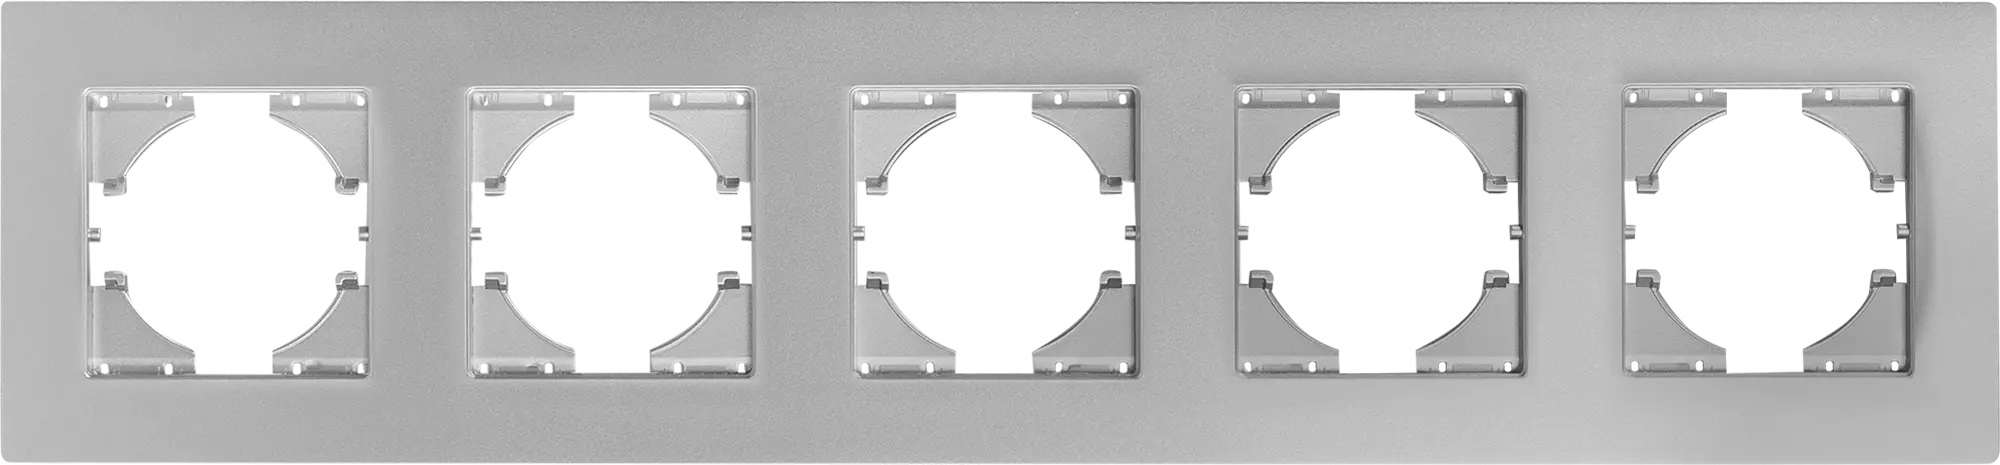 Рамка для розеток и выключателей Gusi Electric City С1115-004 5 постов цвет серебро рамка для розеток и выключателей lexman виктория сферическая 5 постов цвет матовое серебро